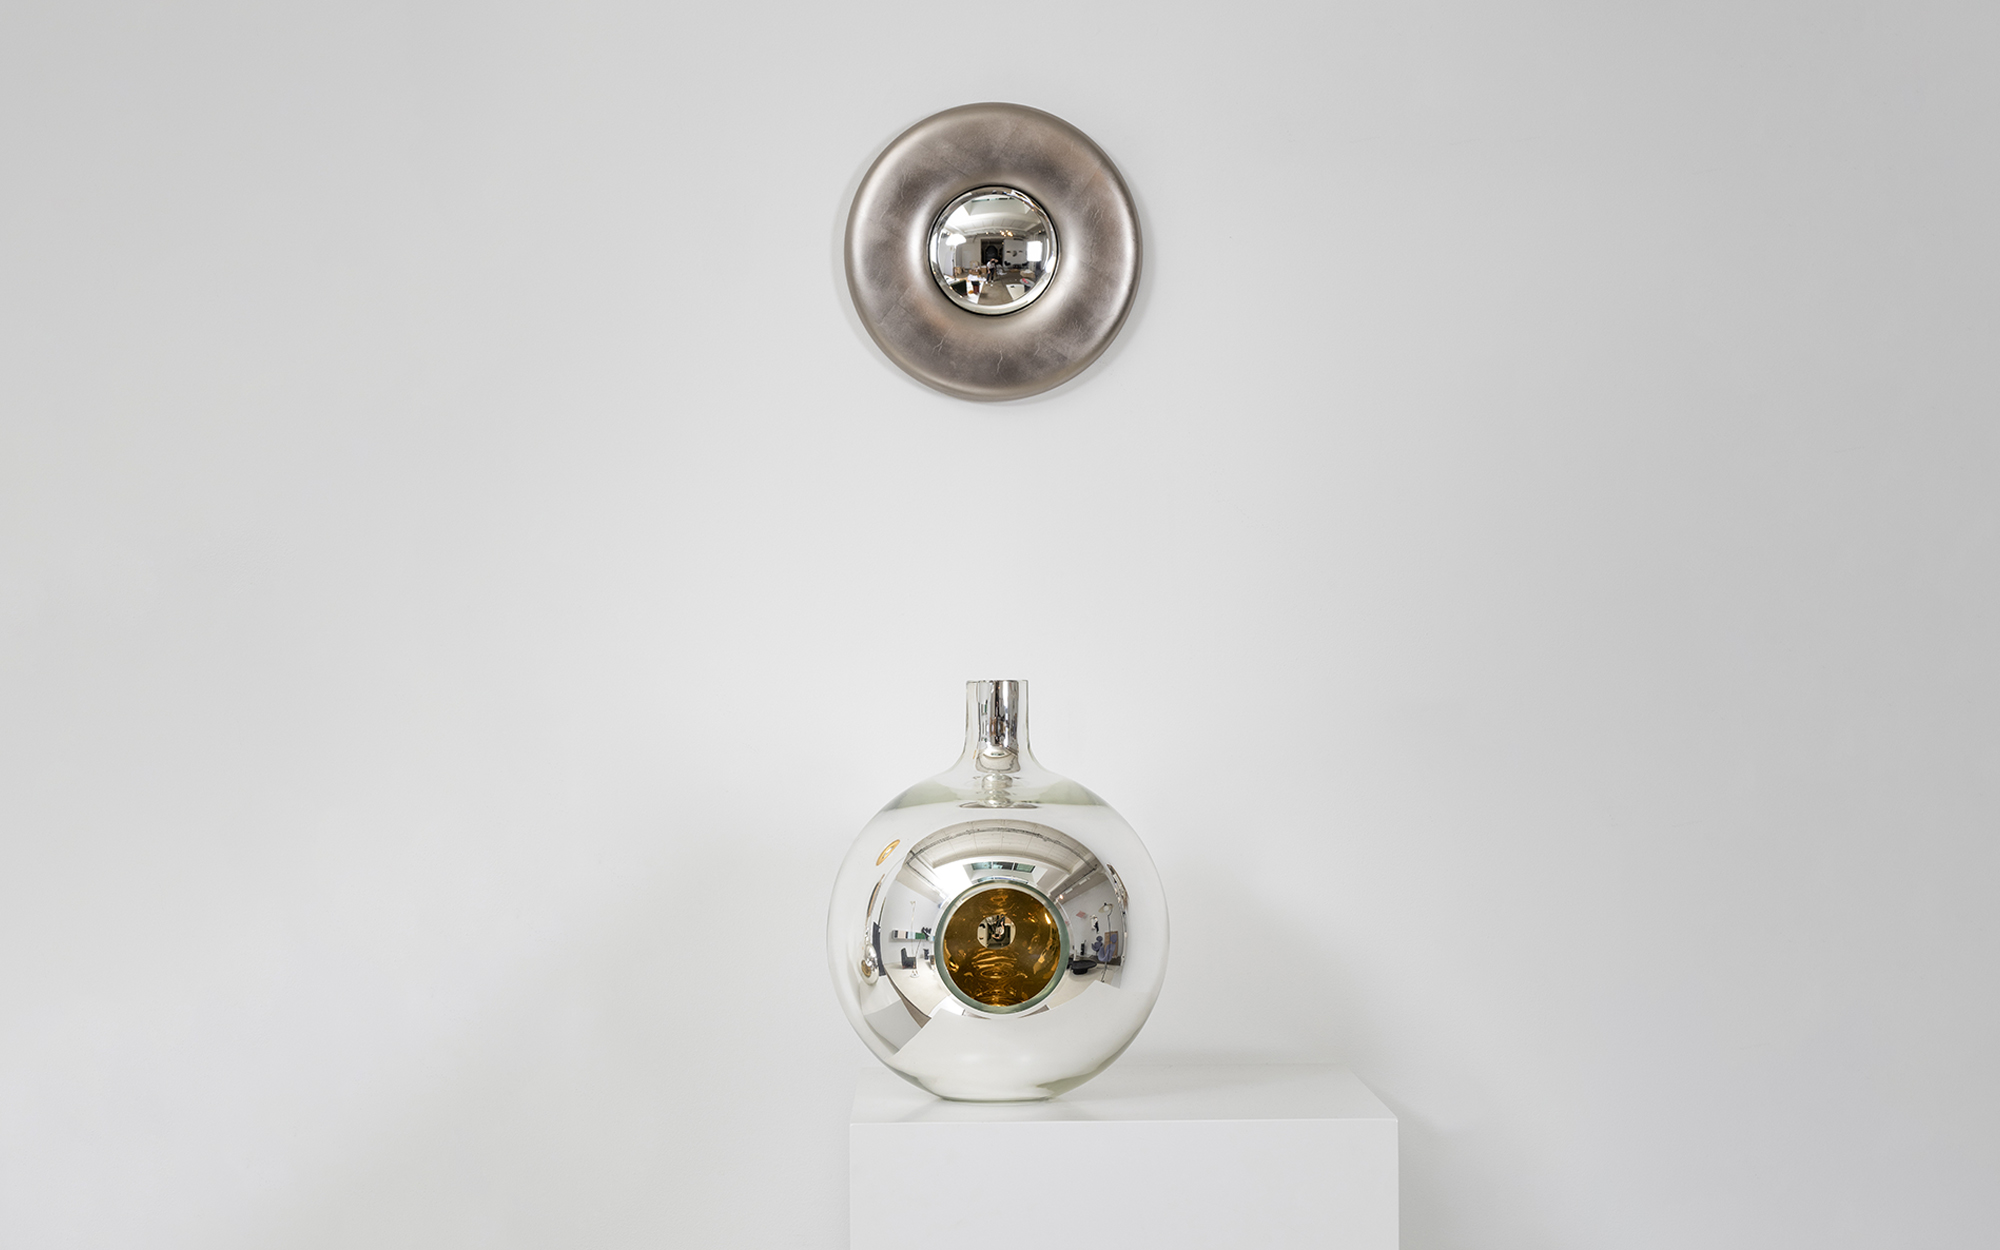 Convex Mirror Vase Single - Front - Lucas Ratton x kamel mennour x Galerie kreo x Jacques Lacoste @Saint-Tropez.